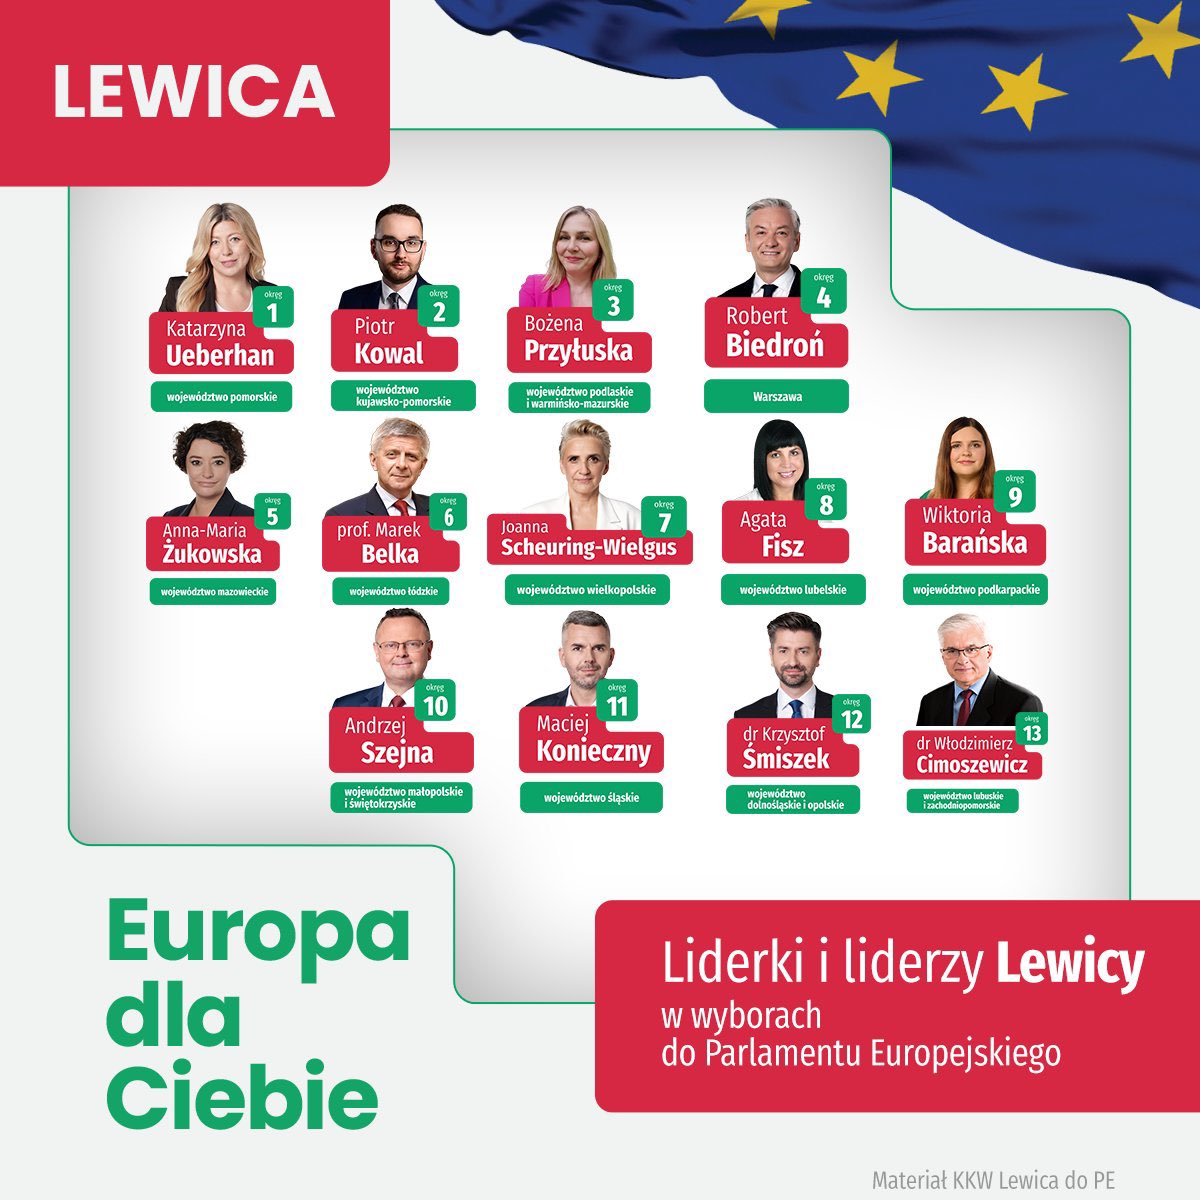 W @__Lewica na jedynkach do PE: 6 kobiet i 7 mężczyzn @Platforma_org : 3 kobiety i 10 mężczyzn Przypomnijcie mi, kto ponoć wygrał październikowe wybory? Kobiety w Polsce? Chyba niektórzy już zapomnieli. #wyborydoPE #prawakobiet #równość